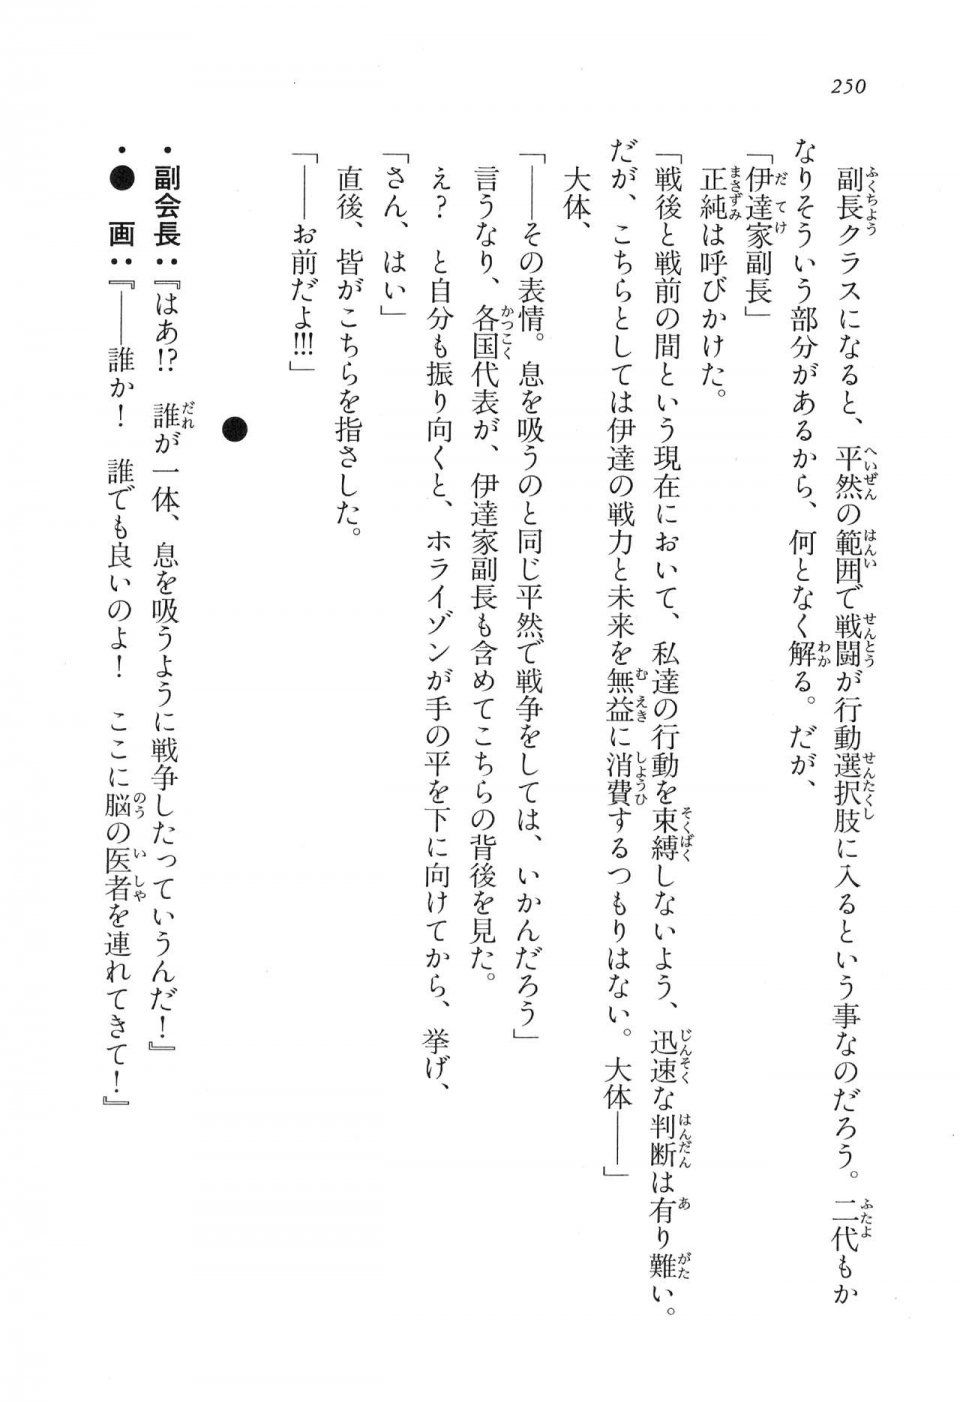 Kyoukai Senjou no Horizon LN Vol 16(7A) - Photo #250